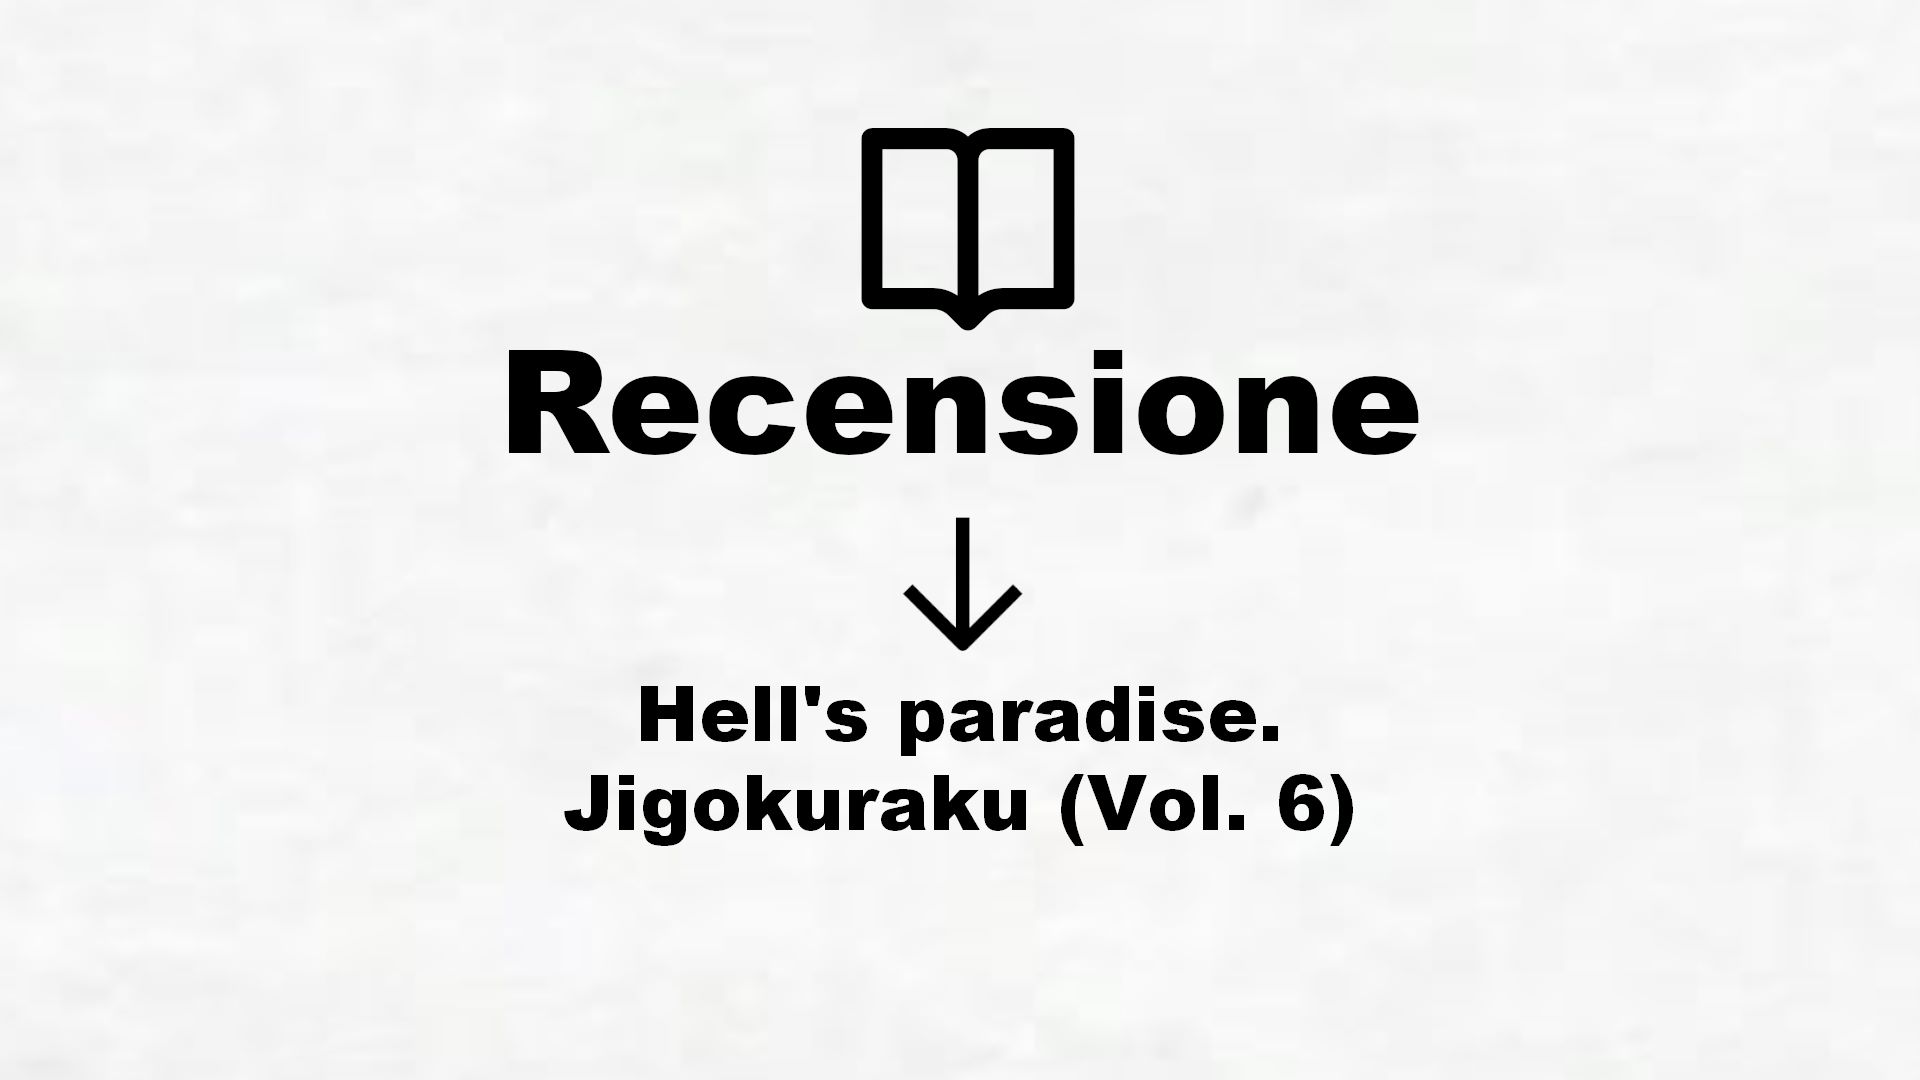 Hell’s paradise. Jigokuraku (Vol. 6) – Recensione Libro